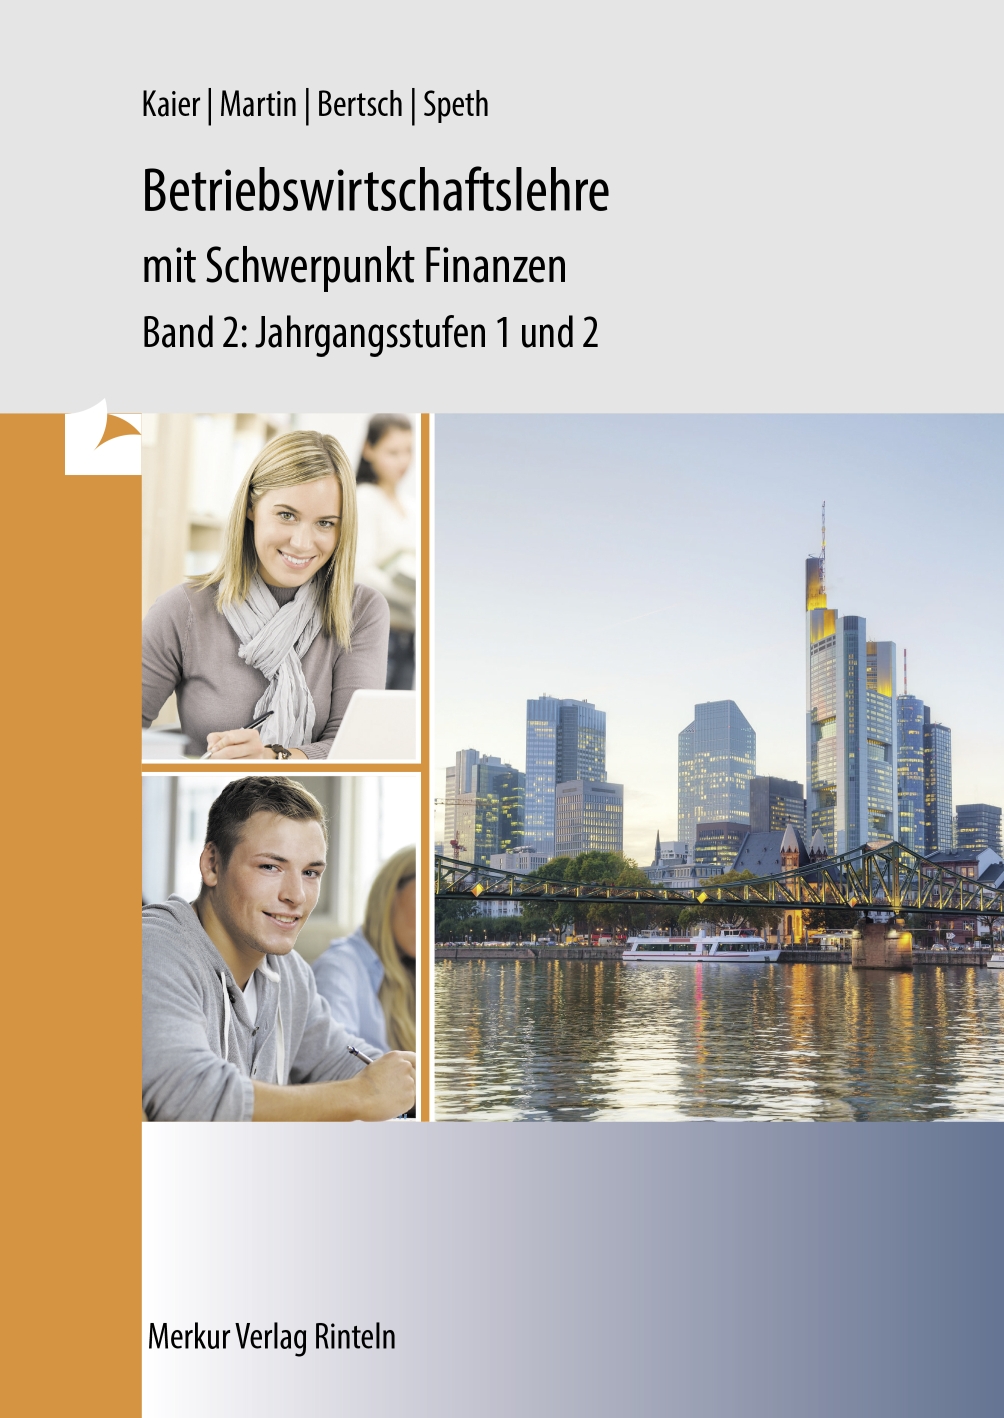 Betriebswirtschaftslehre mit Schwerpunkt Finanzen Band 2: Jahrgangsstufen 1 und 2